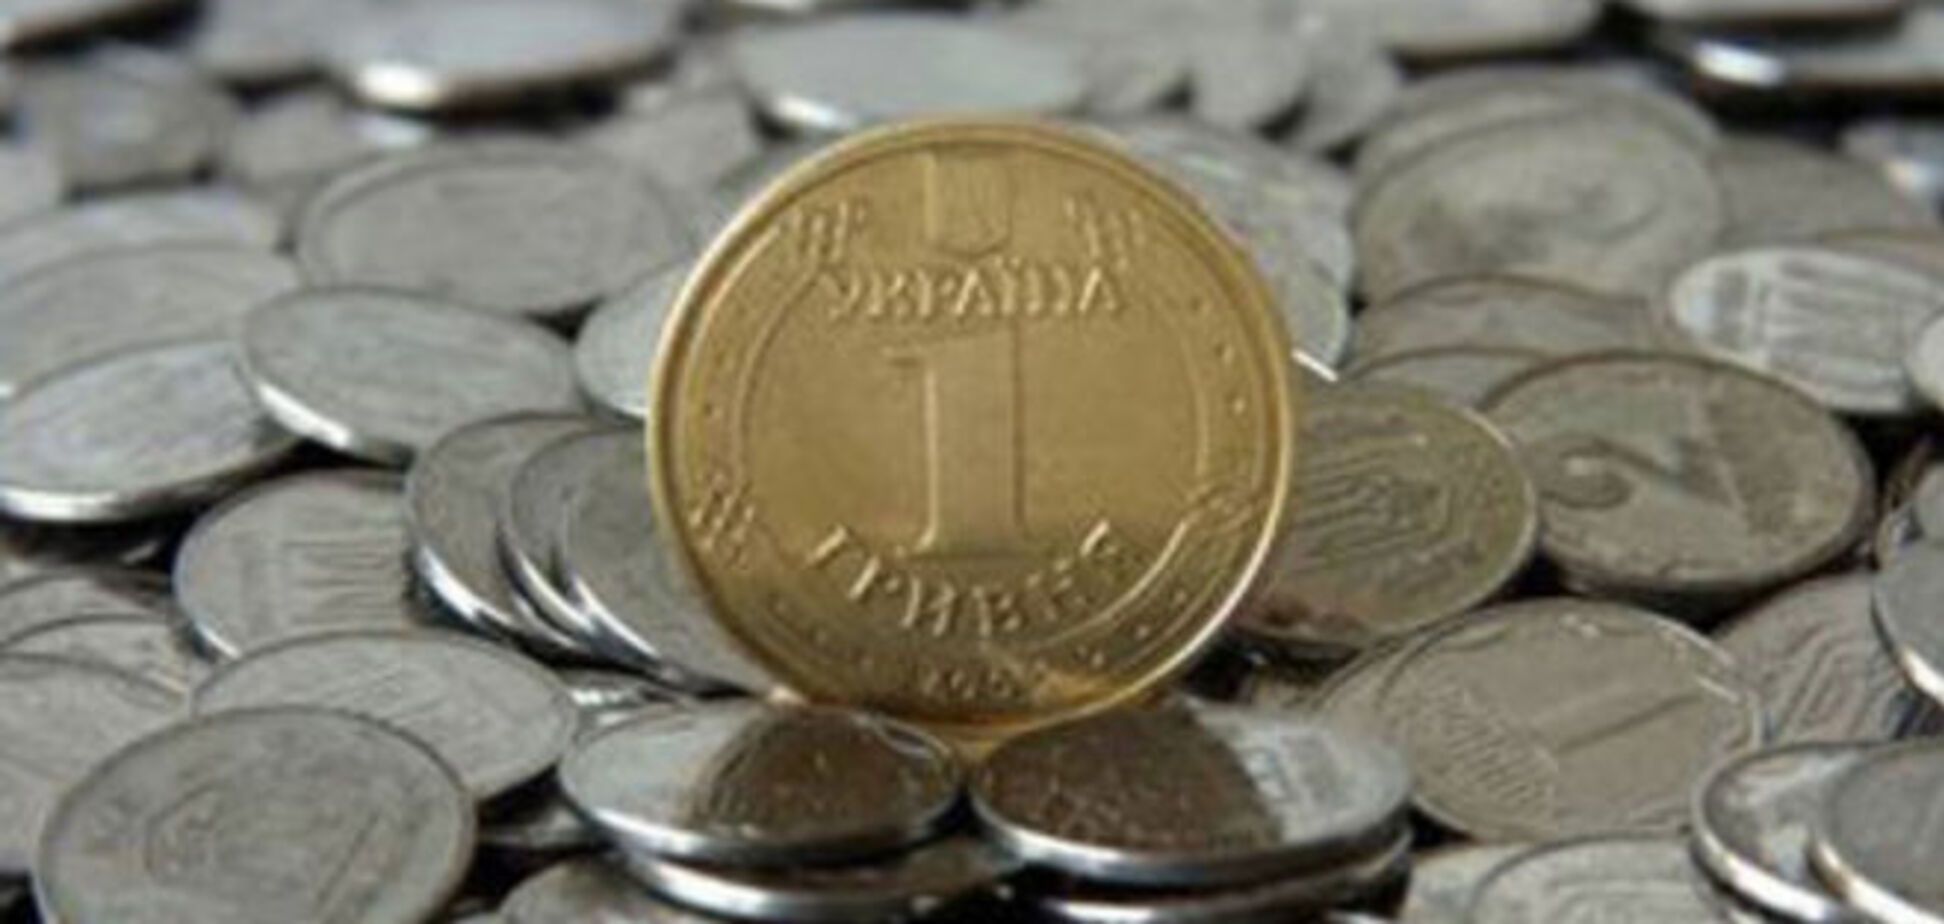 Кто сказал, что в Украине мало денег? Неправда - их много